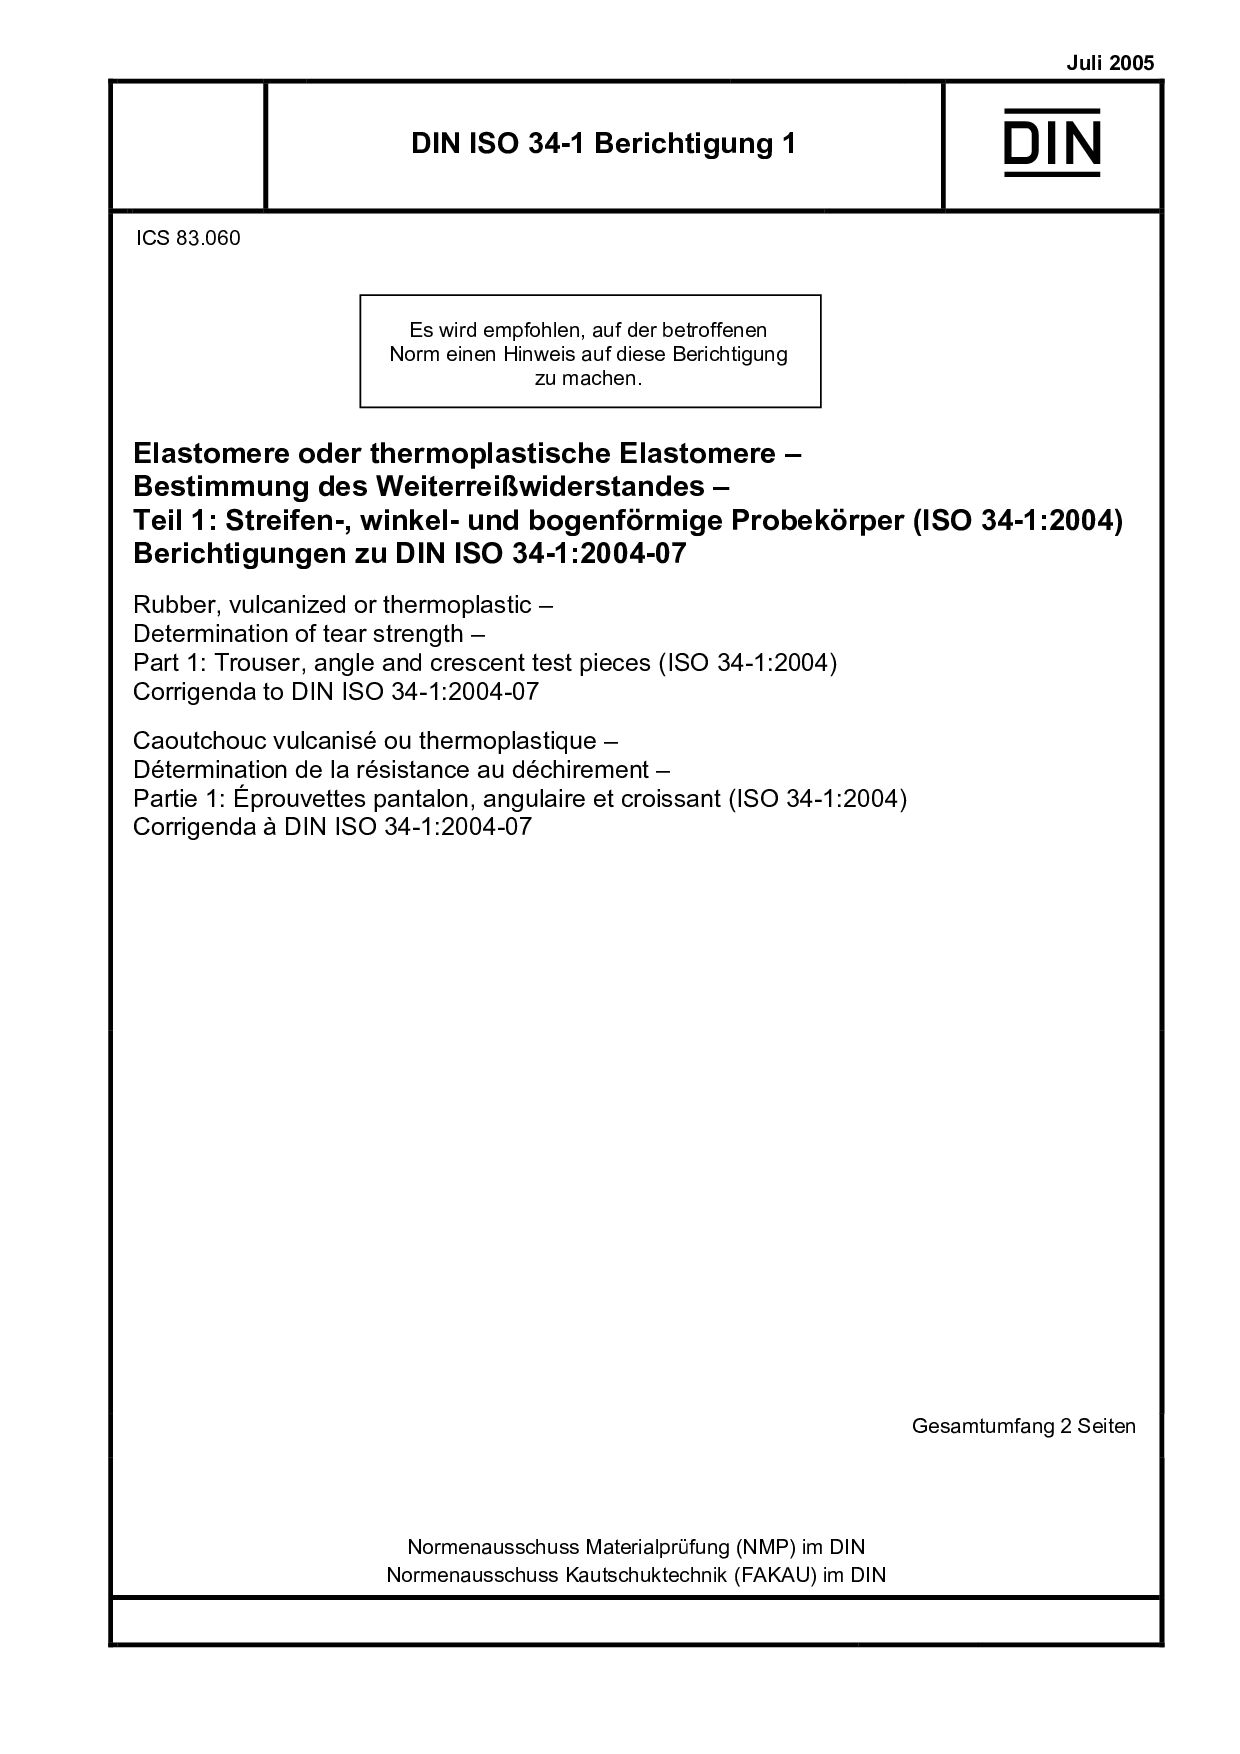 DIN ISO 34-1 Berichtigung 1 2005-7